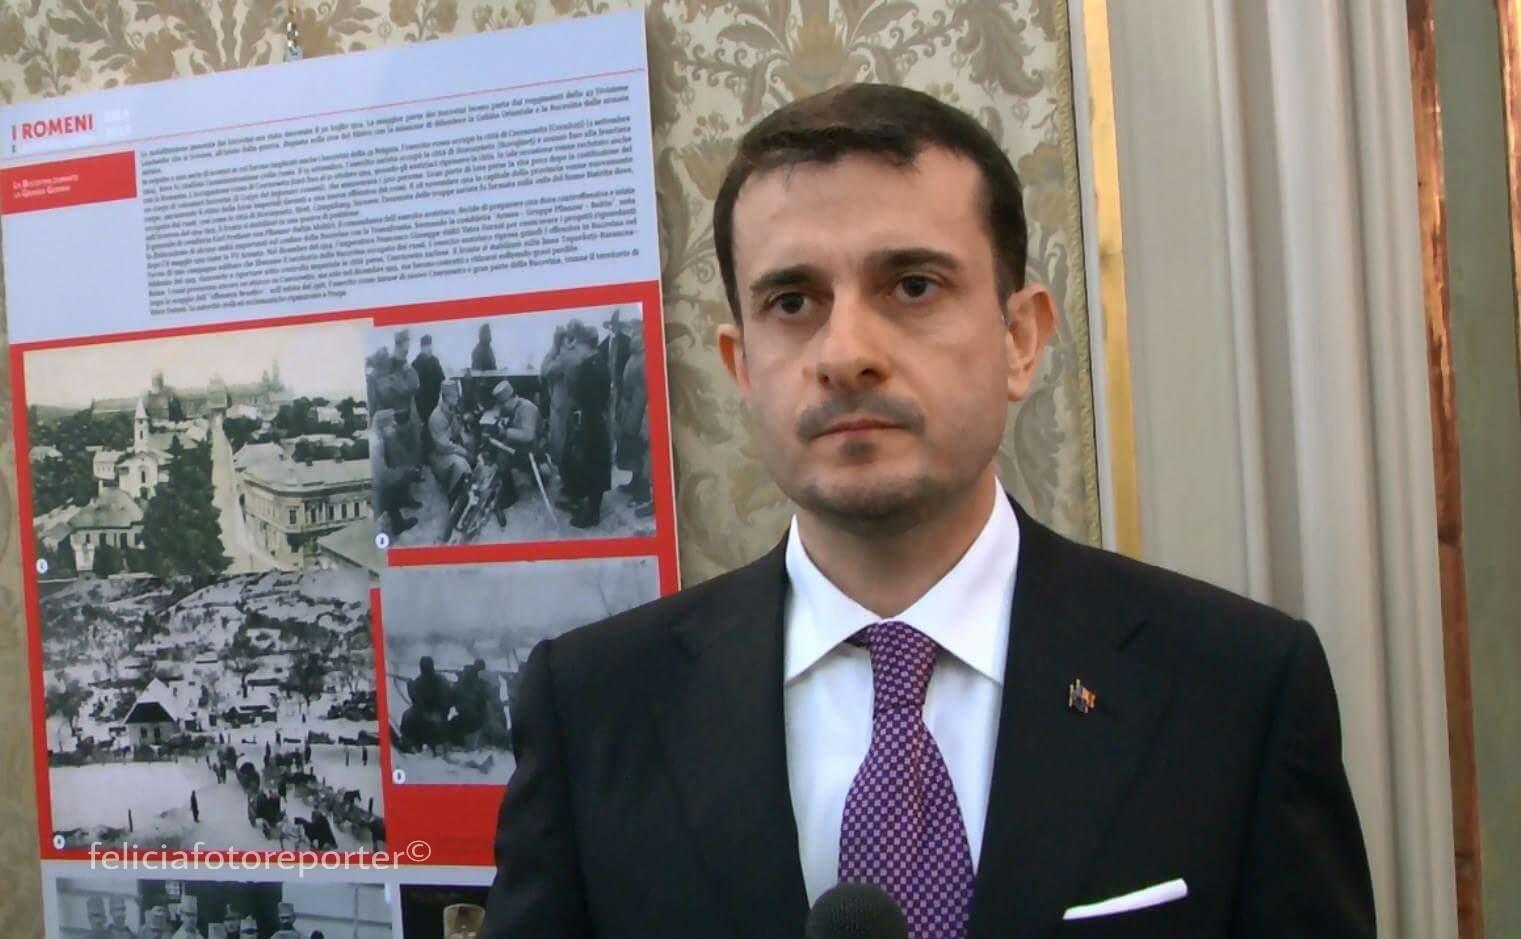 “Milano, ponte economico e culturale tra Italia e Romania: intervista dott. George Bologan